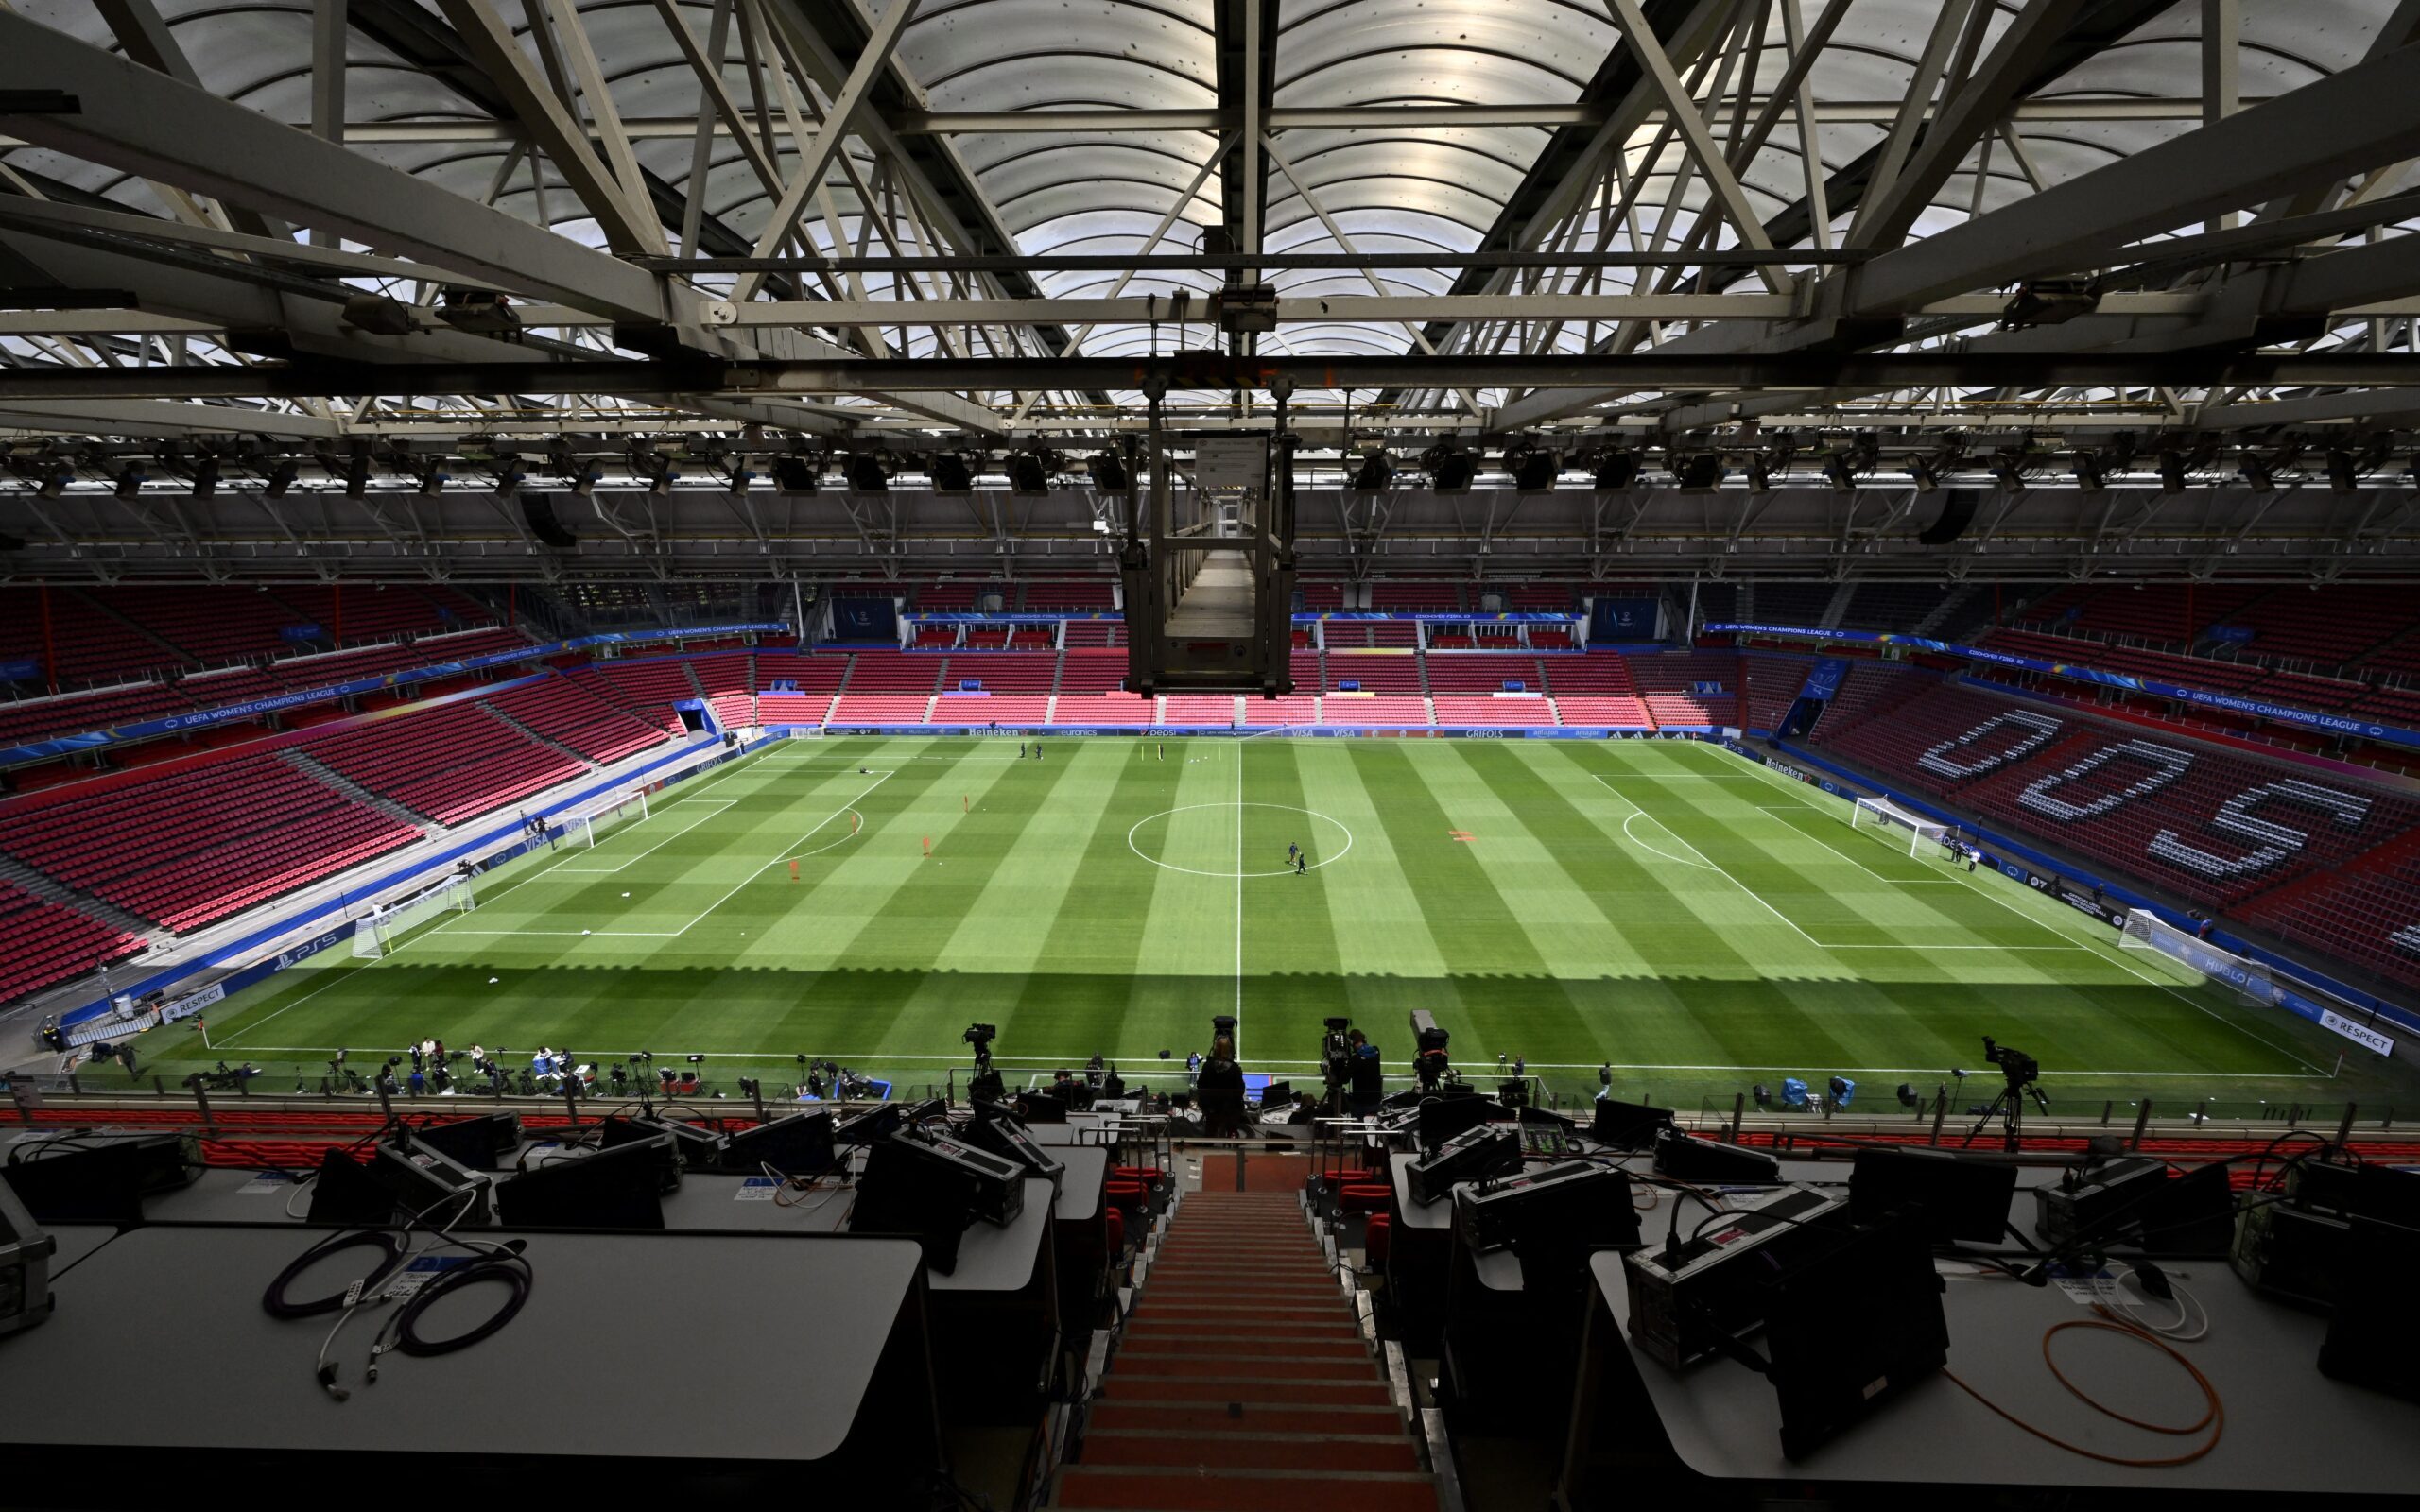 HBO Max anuncia o 'Maior Pré-jogo da História' para a final da UEFA  Champions League 2023 - Bastidores - O Planeta TV